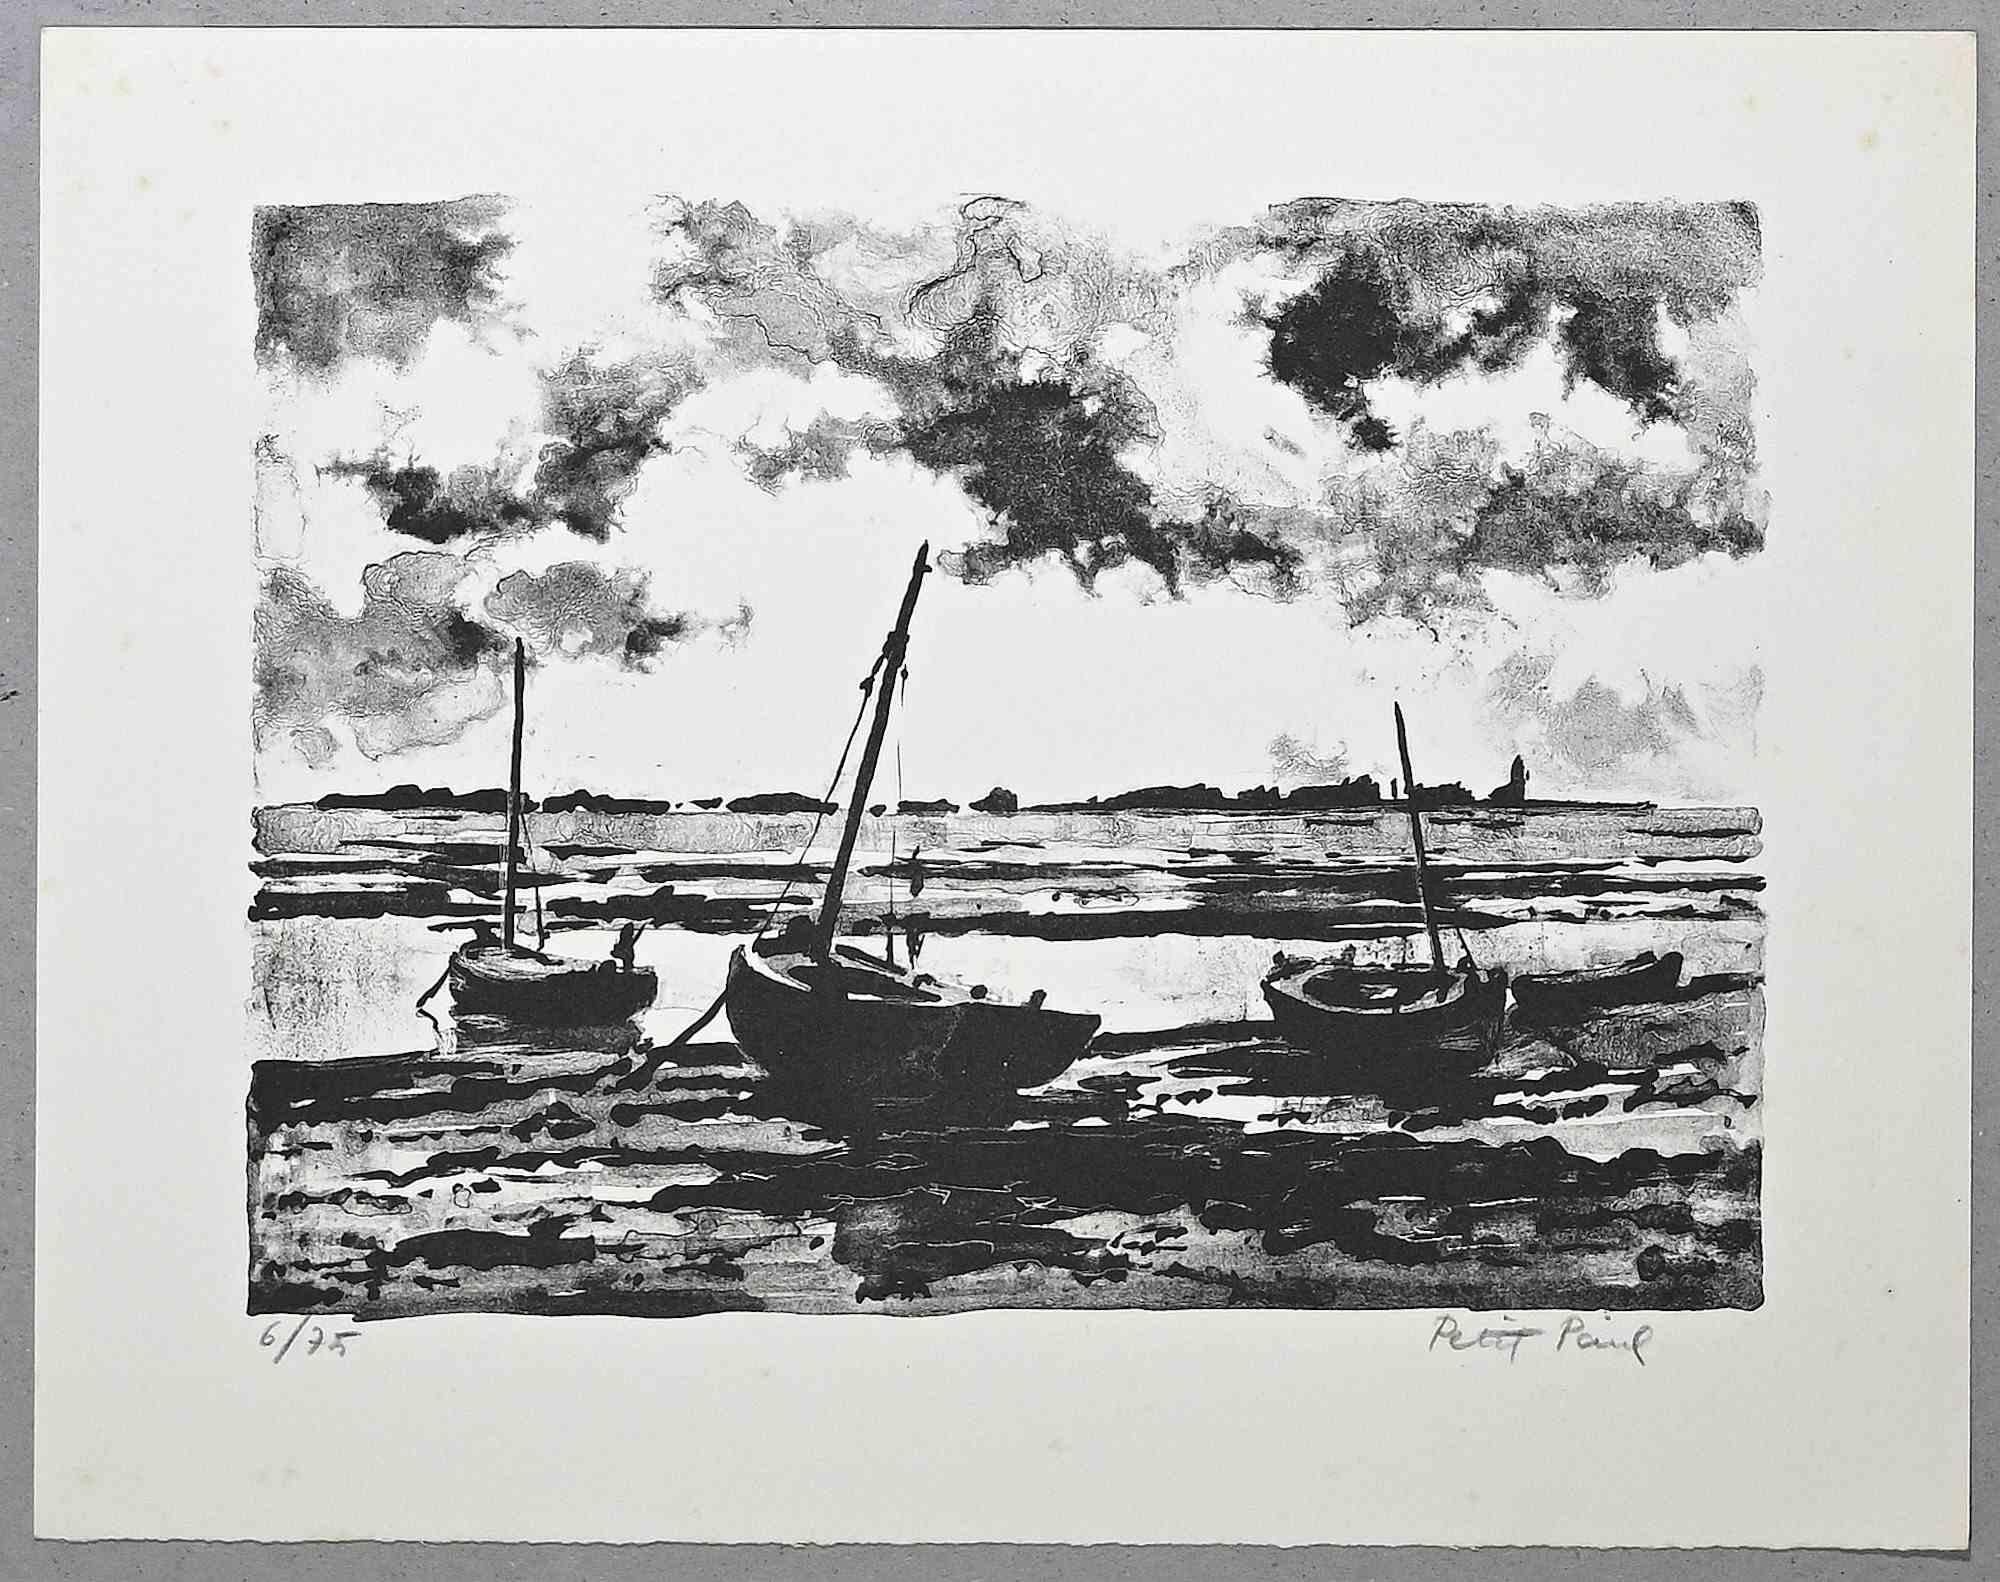 Schiffe ist eine Original-Lithographie von Paul Petit aus der Mitte des 20. Jahrhunderts.

Handsigniert.

Nummeriert, 6/75

Das Kunstwerk wird mit sicheren Strichen in einer ausgewogenen Komposition dargestellt.